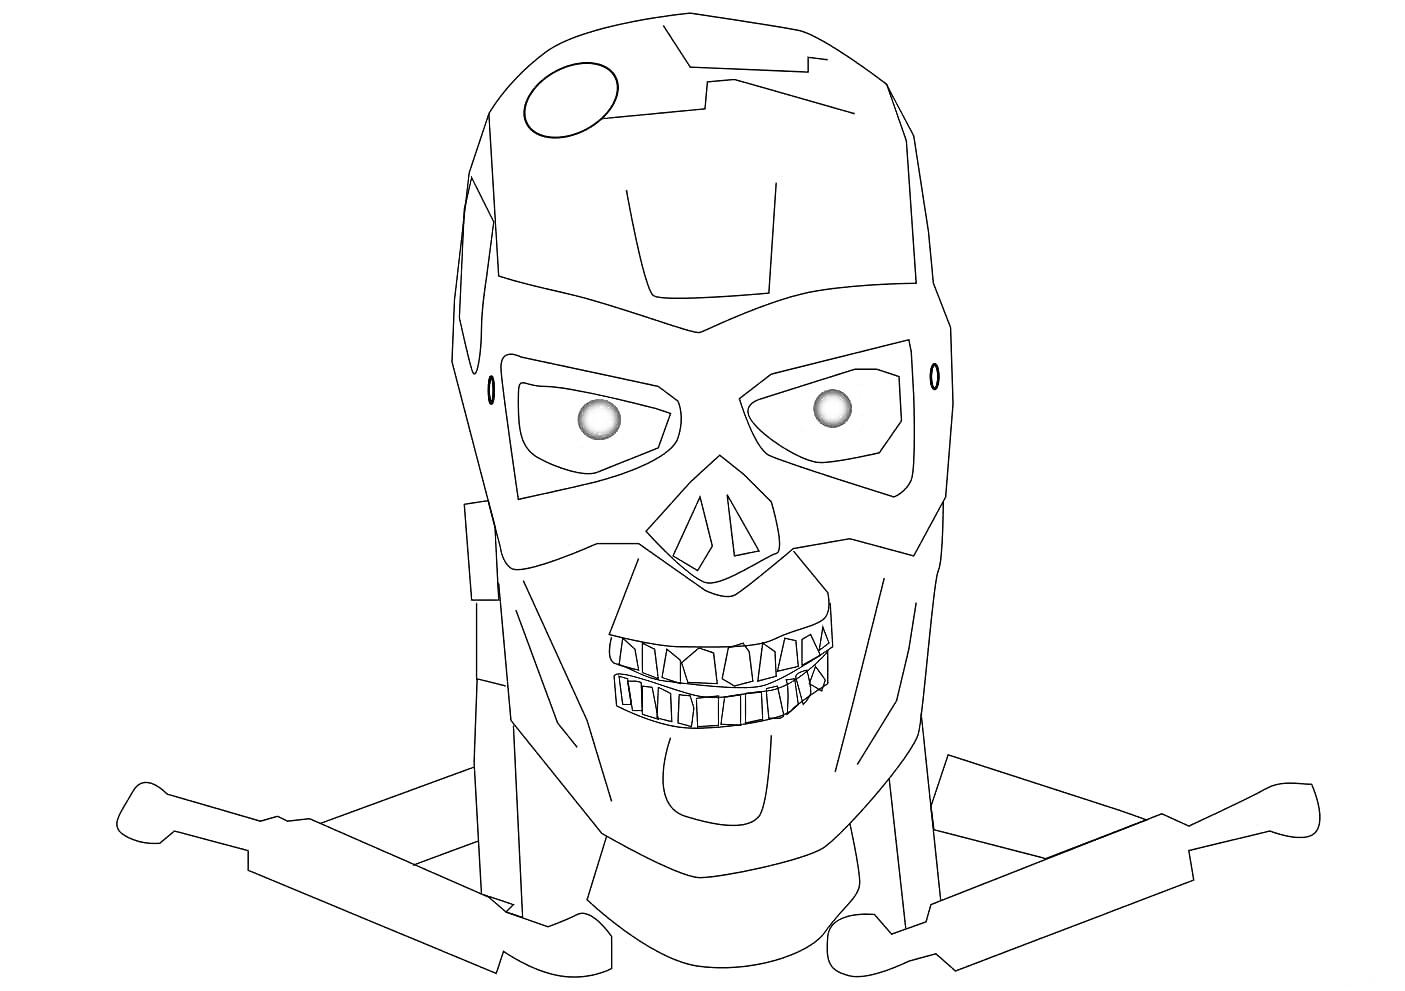 Голова Терминатора с красными глазами, с элементами черепа и металлических деталей